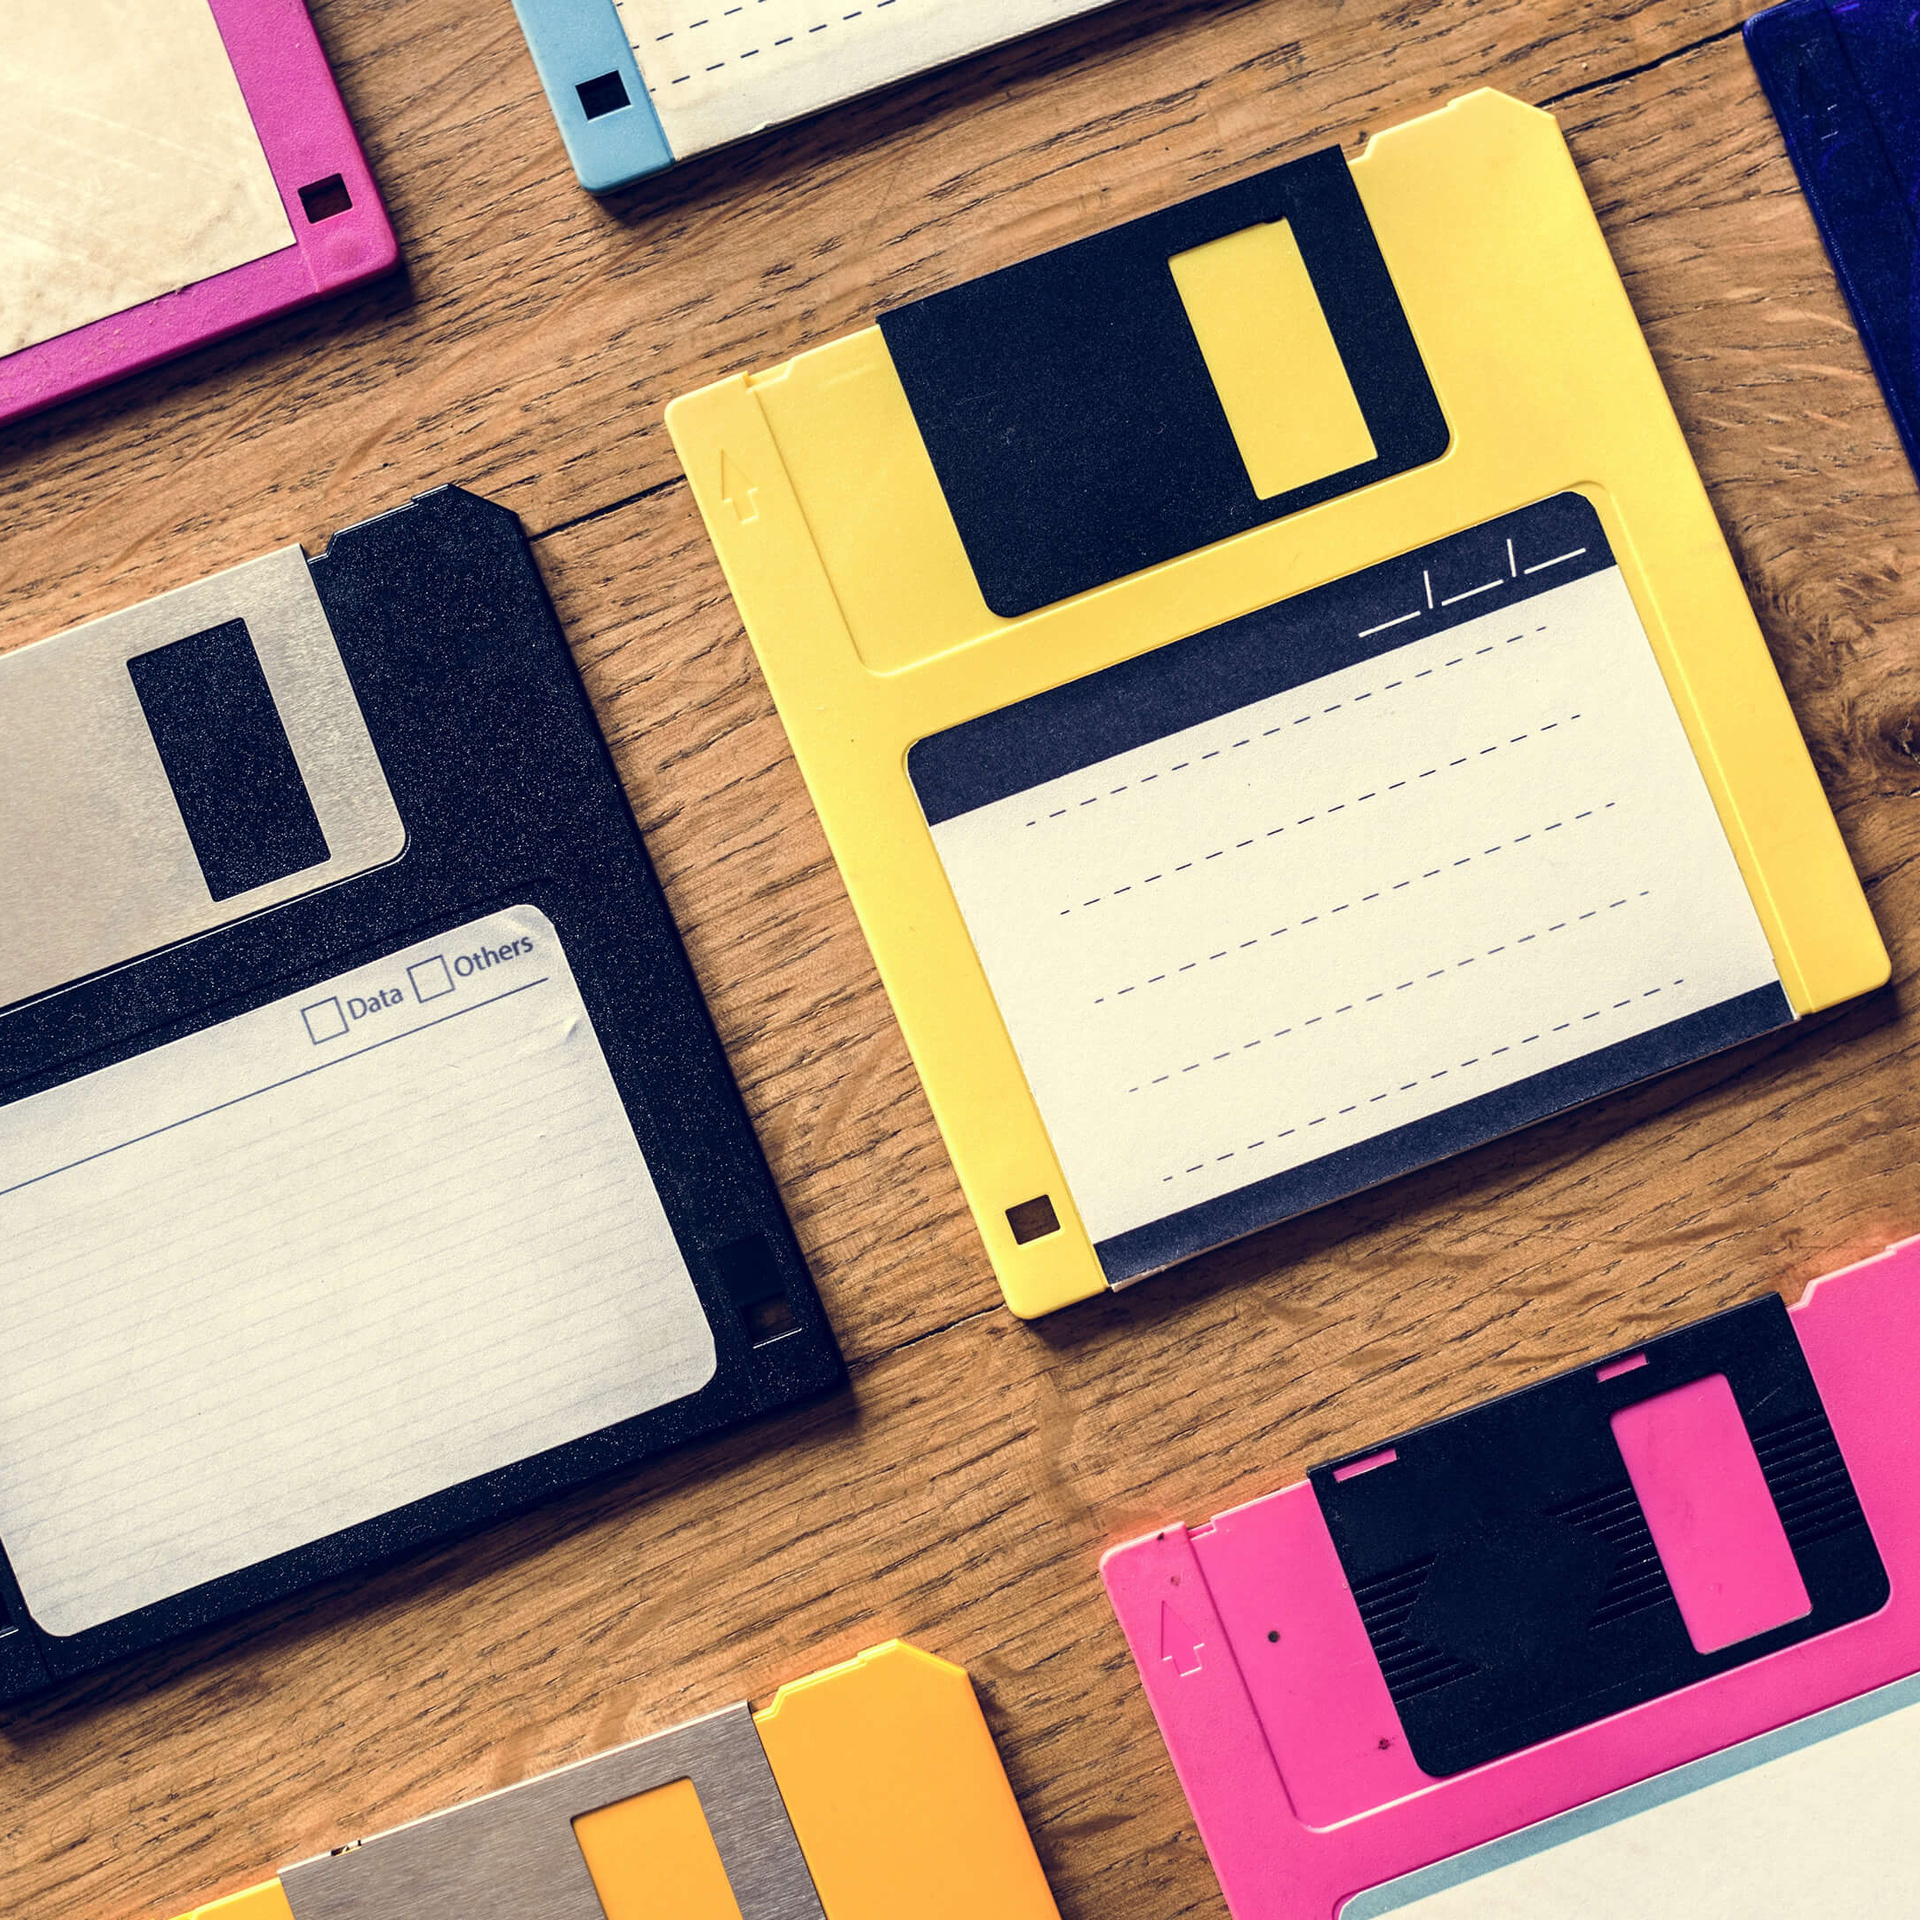 Old school floppy disk drive data storage